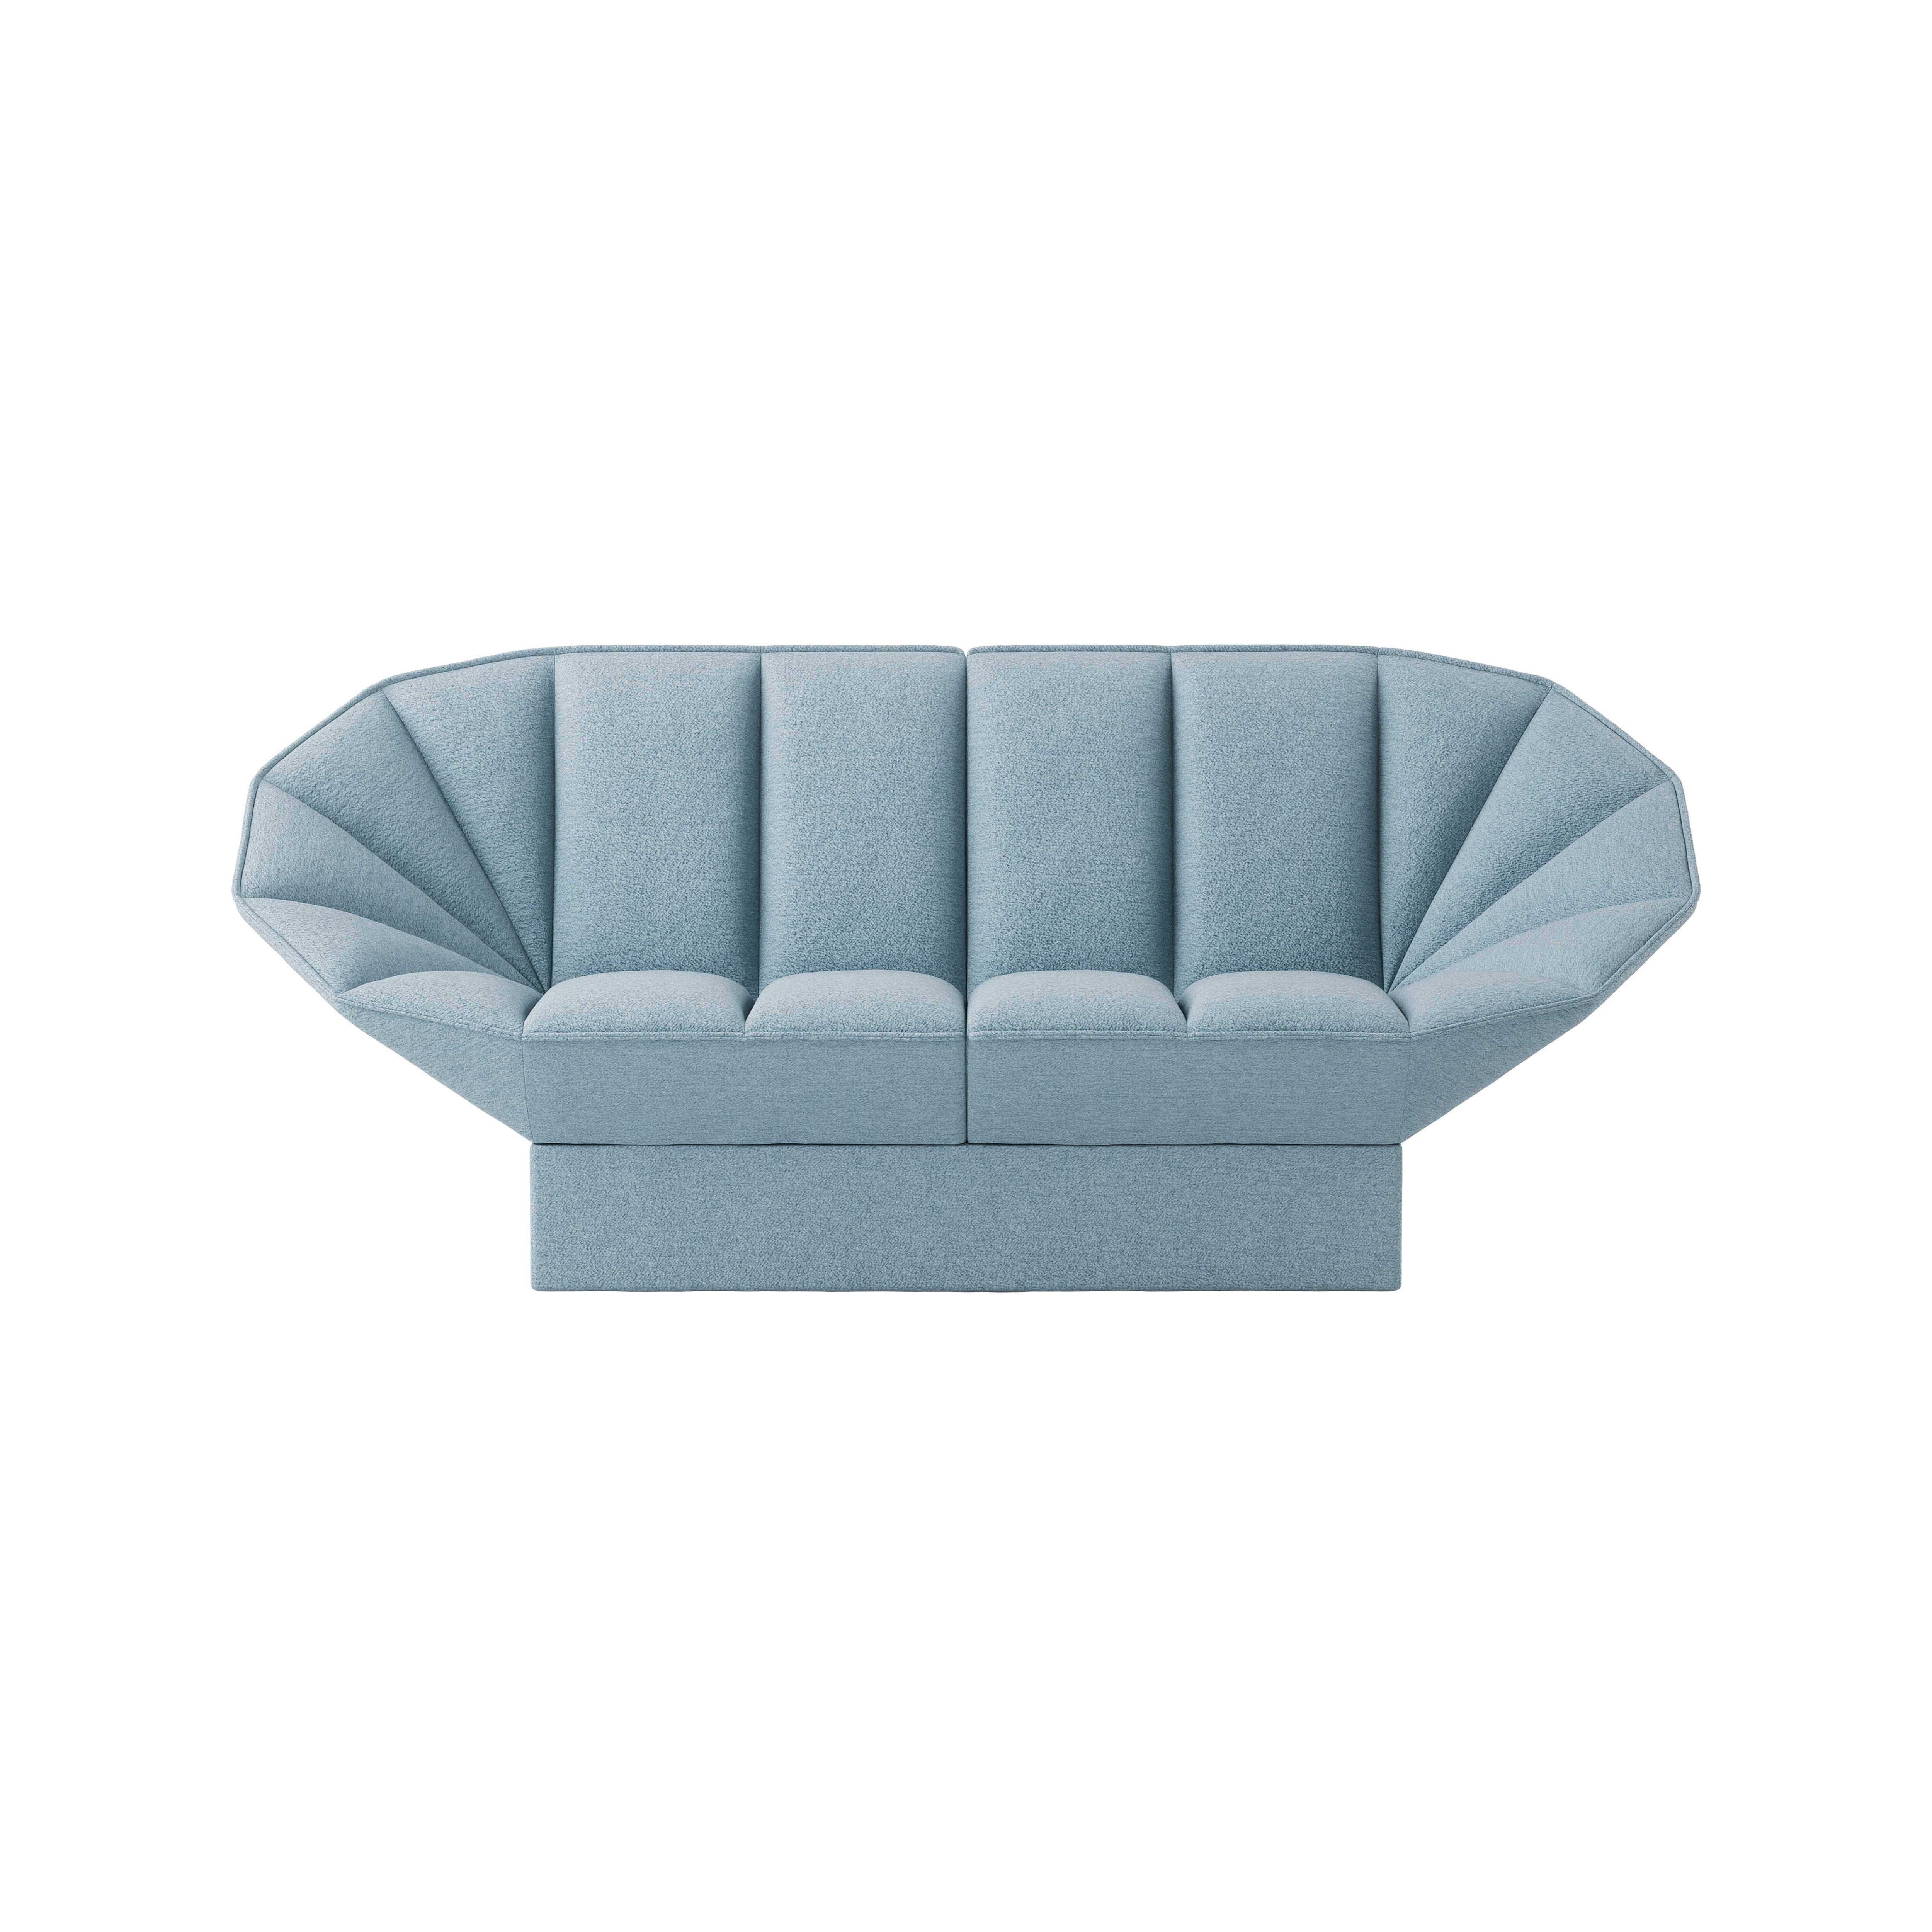 Ori 2- seater sofa product image 1